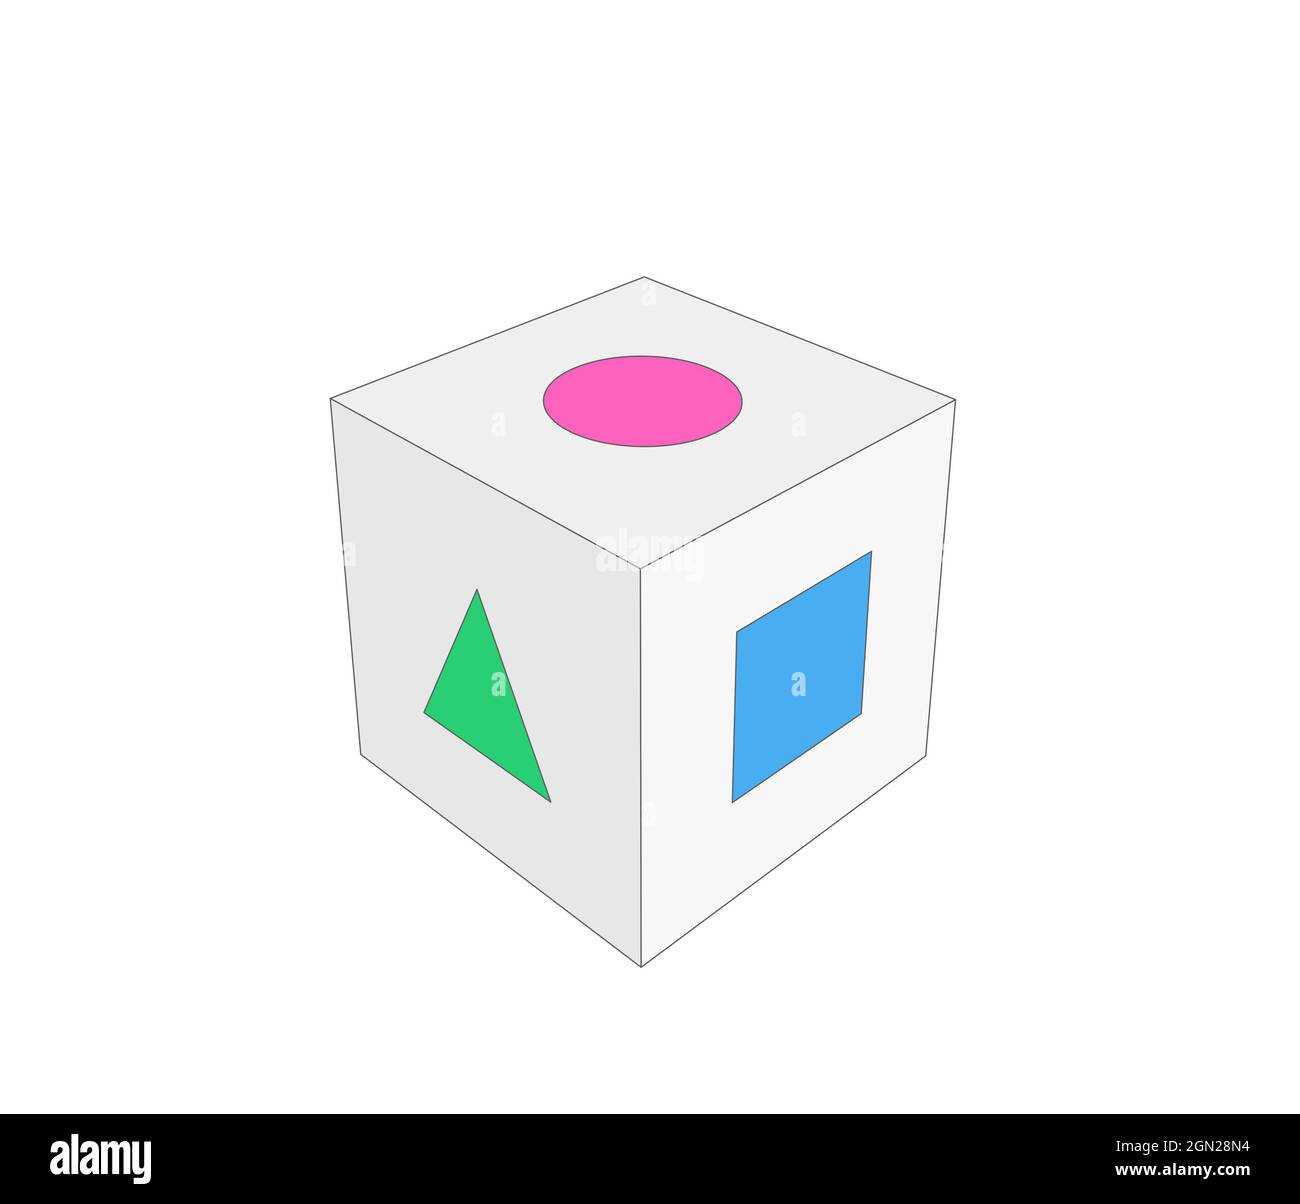 Illustrazione di un cubo 3d con forme di base come un cerchio, un quadrato e un triangolo incisi sulle facce Foto Stock